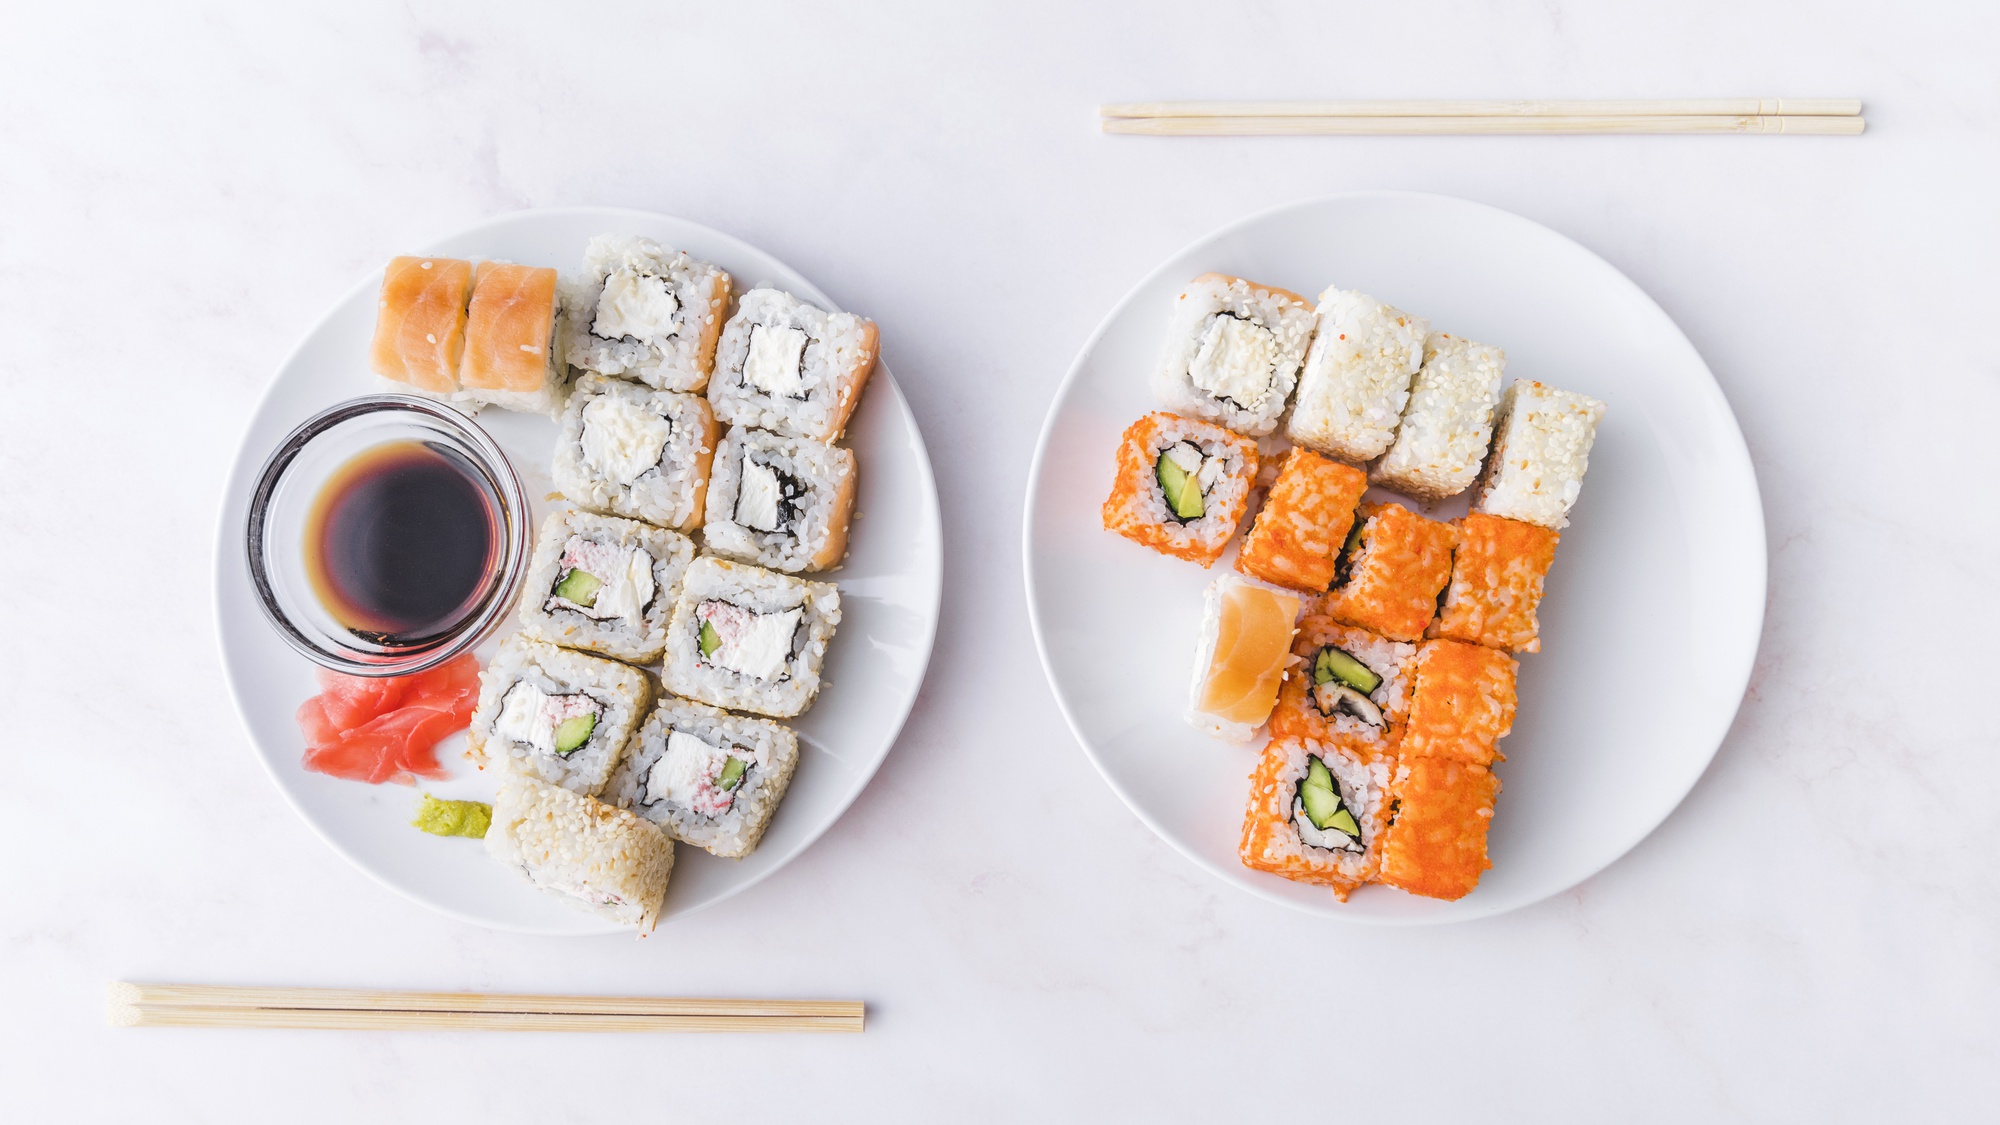 Surtido de sushi con palos vista superior